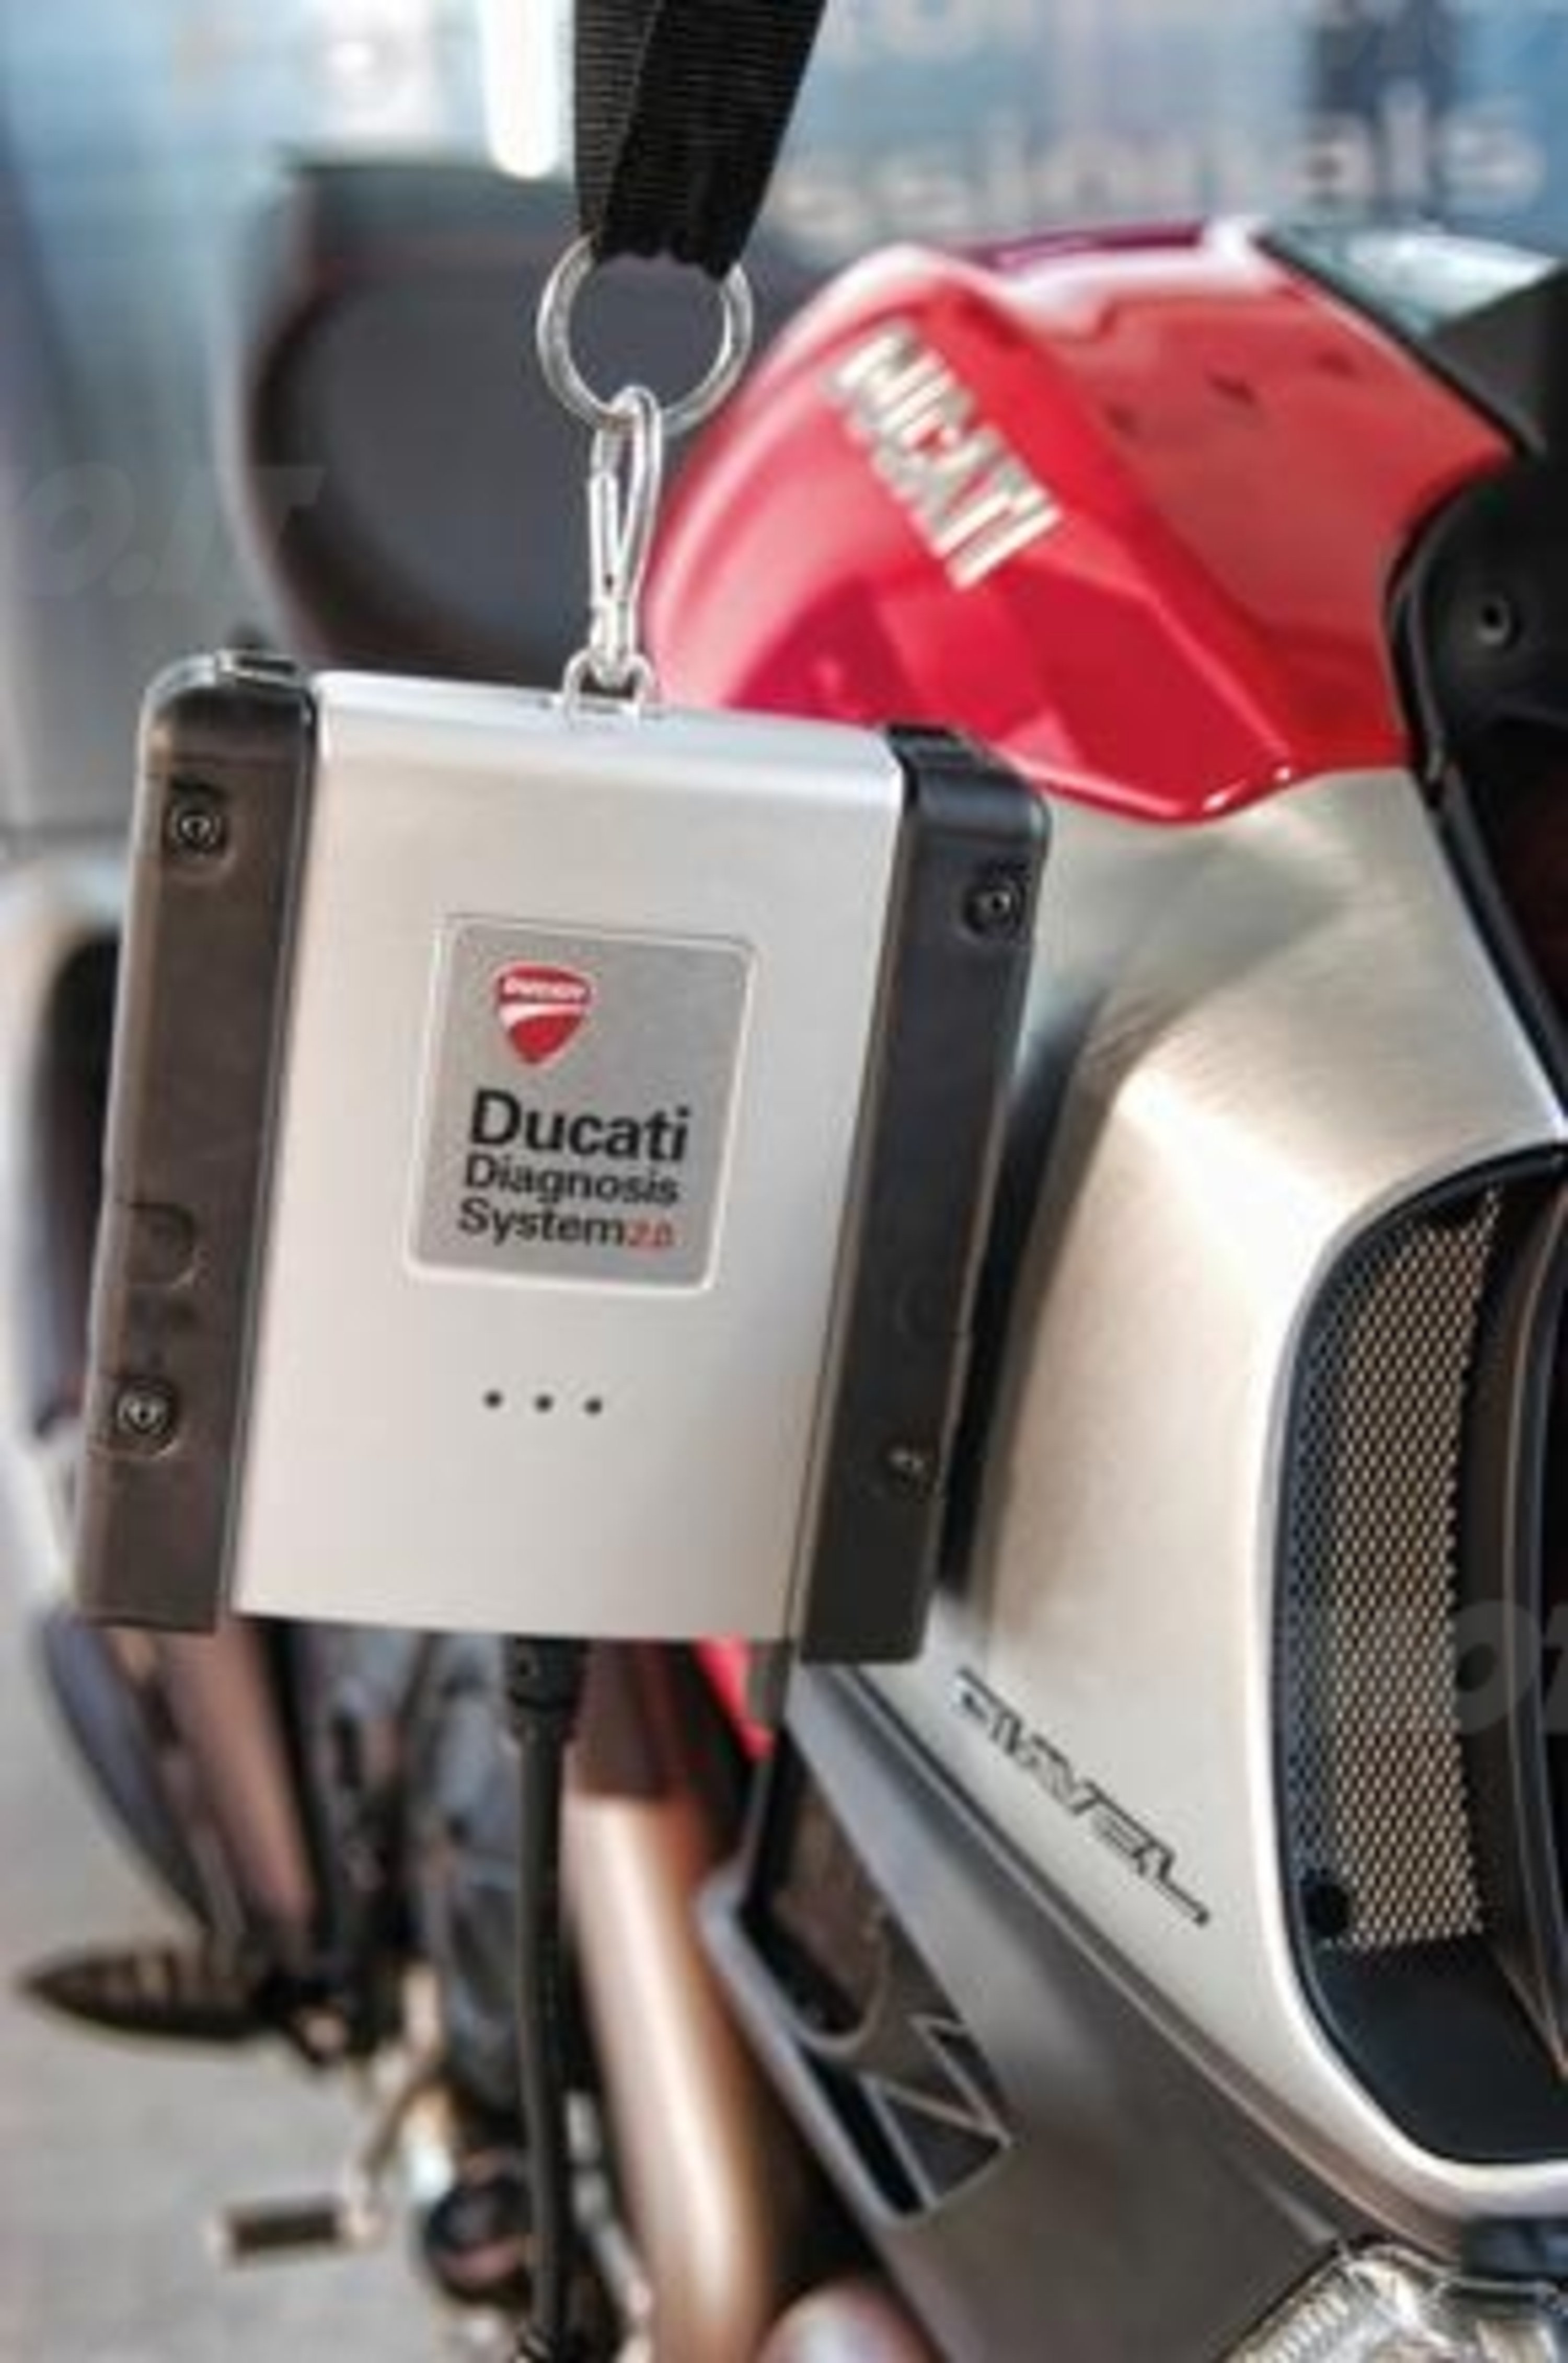 Texa fornir&agrave; strumenti per la diagnosi elettronica a Ducati